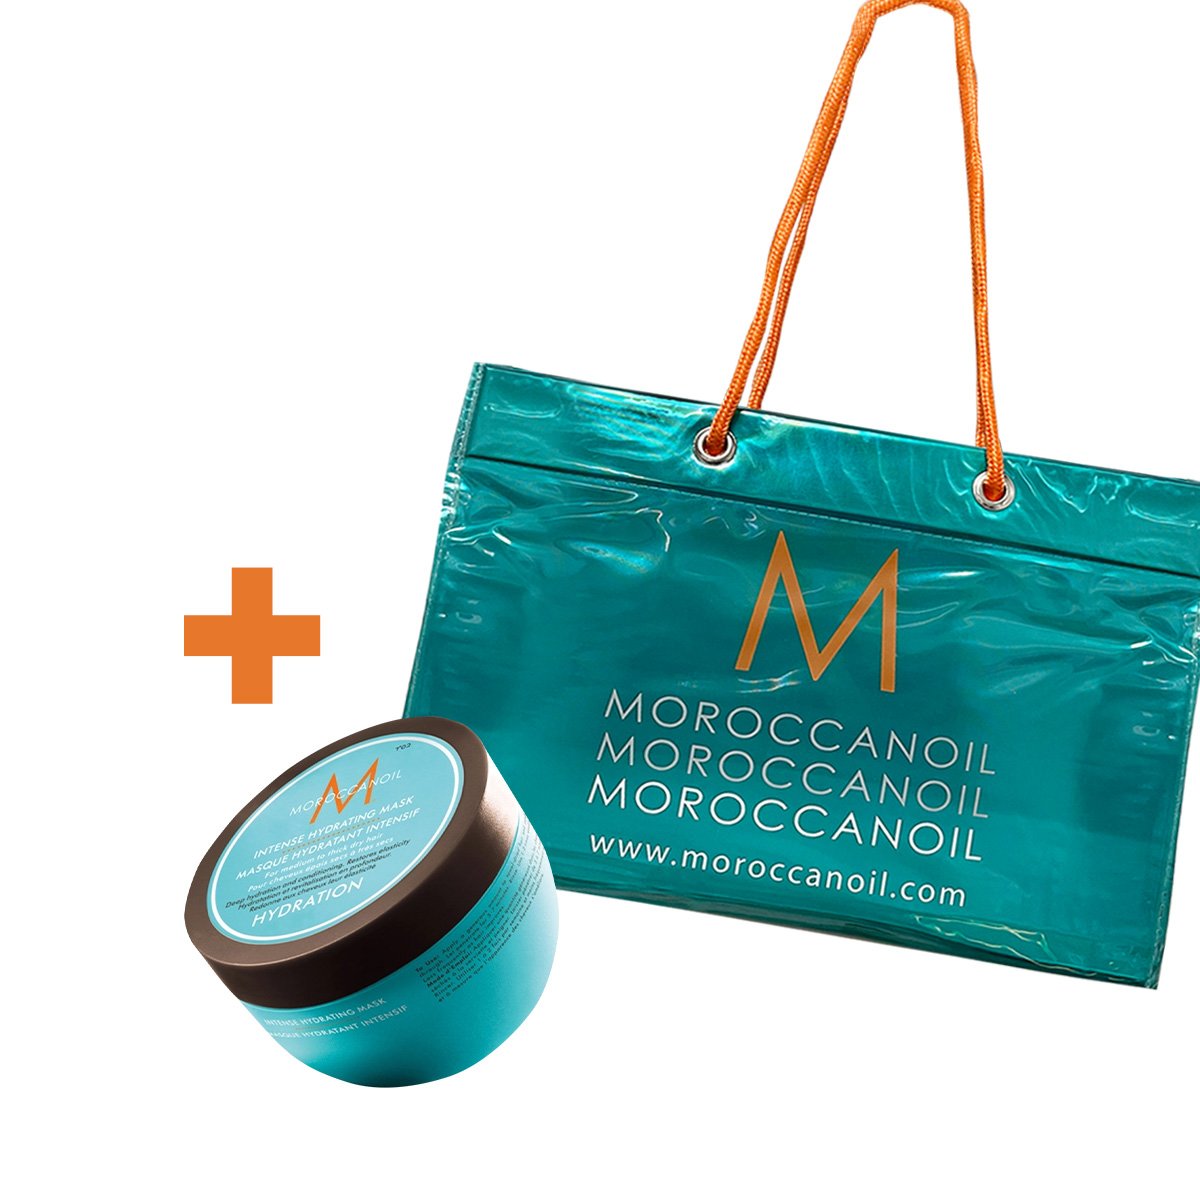 Kit Moroccanoil Intense Hydrating Mascara de Hidratacao e Bolsa de Praia (2 produtos)